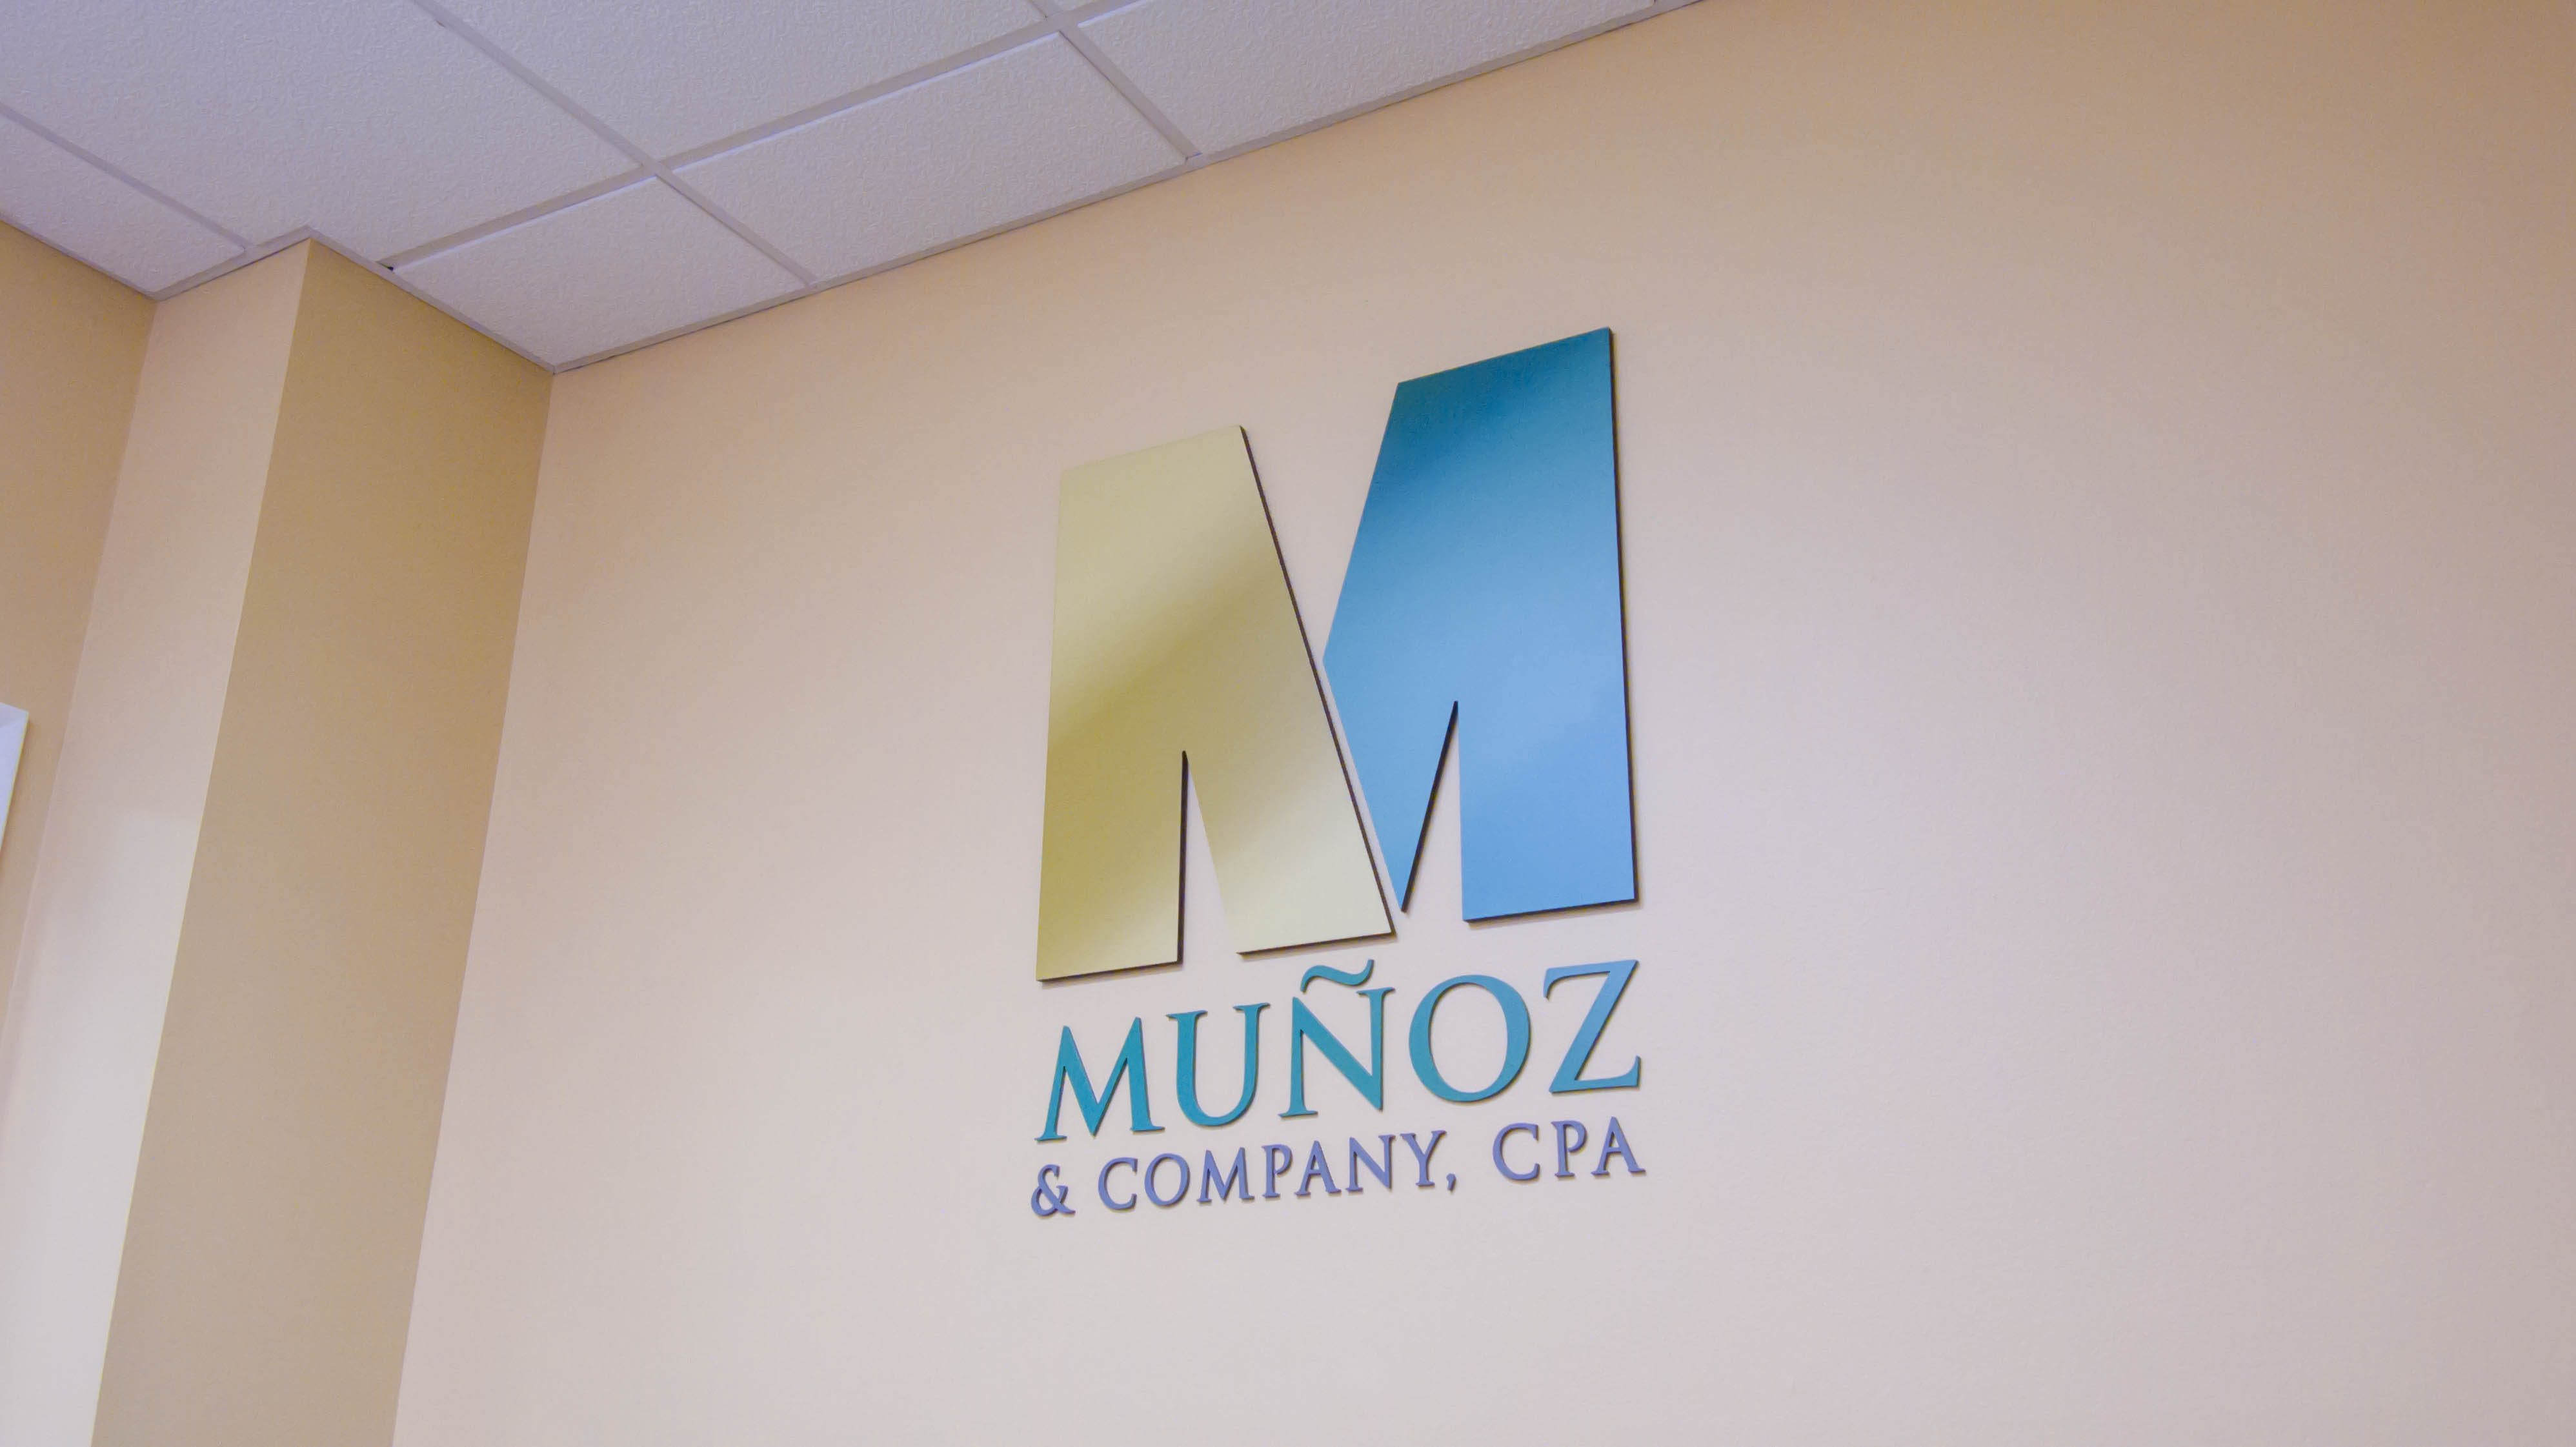 Munoz & Company, CPA - Logo on Wall